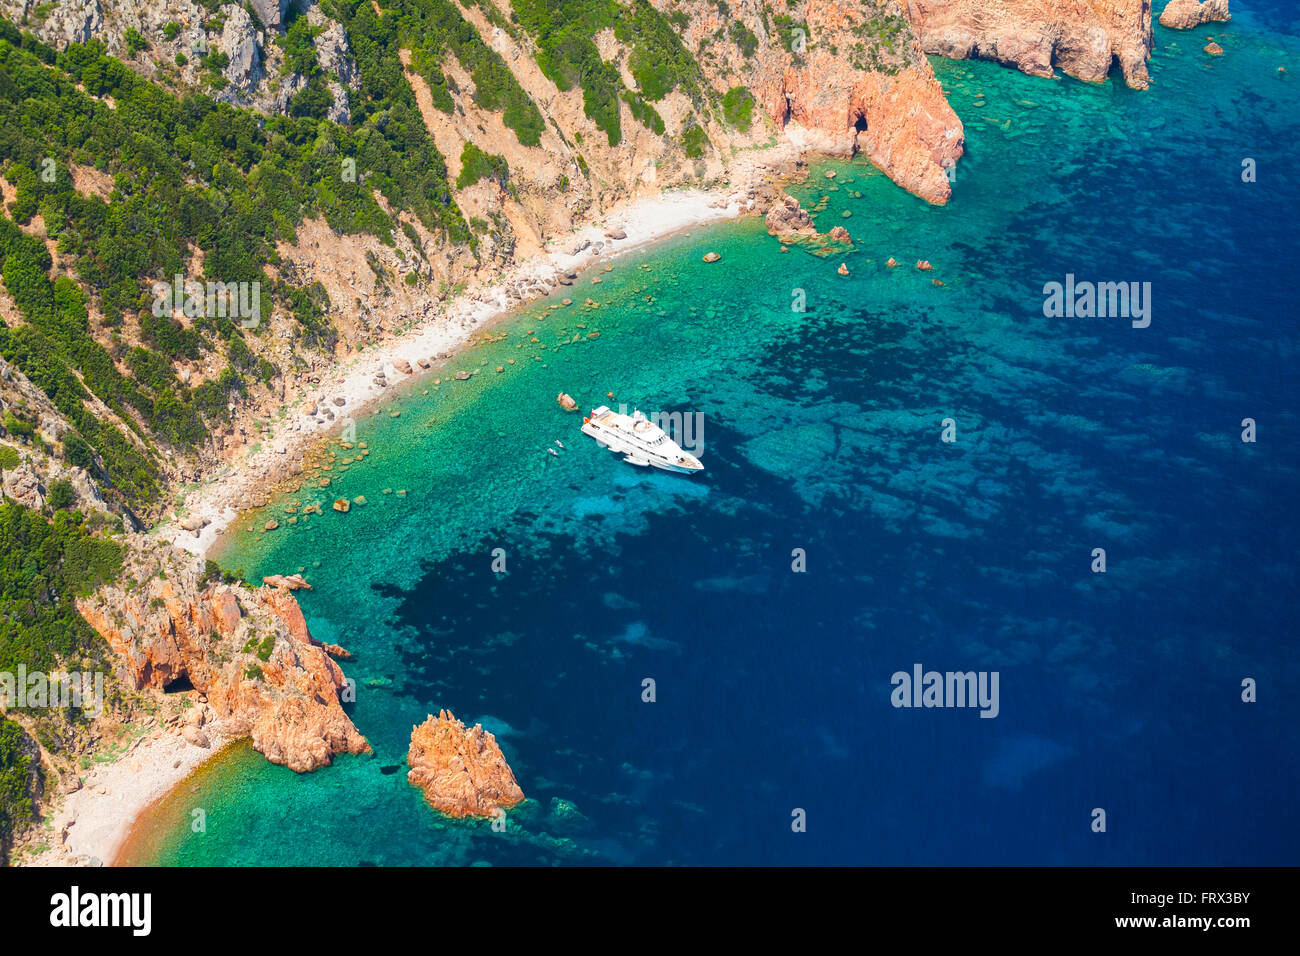 Córcega, isla francesa en el Mar Mediterráneo. El paisaje costero con rocas y placer yate a motor, a vista de pájaro Foto de stock